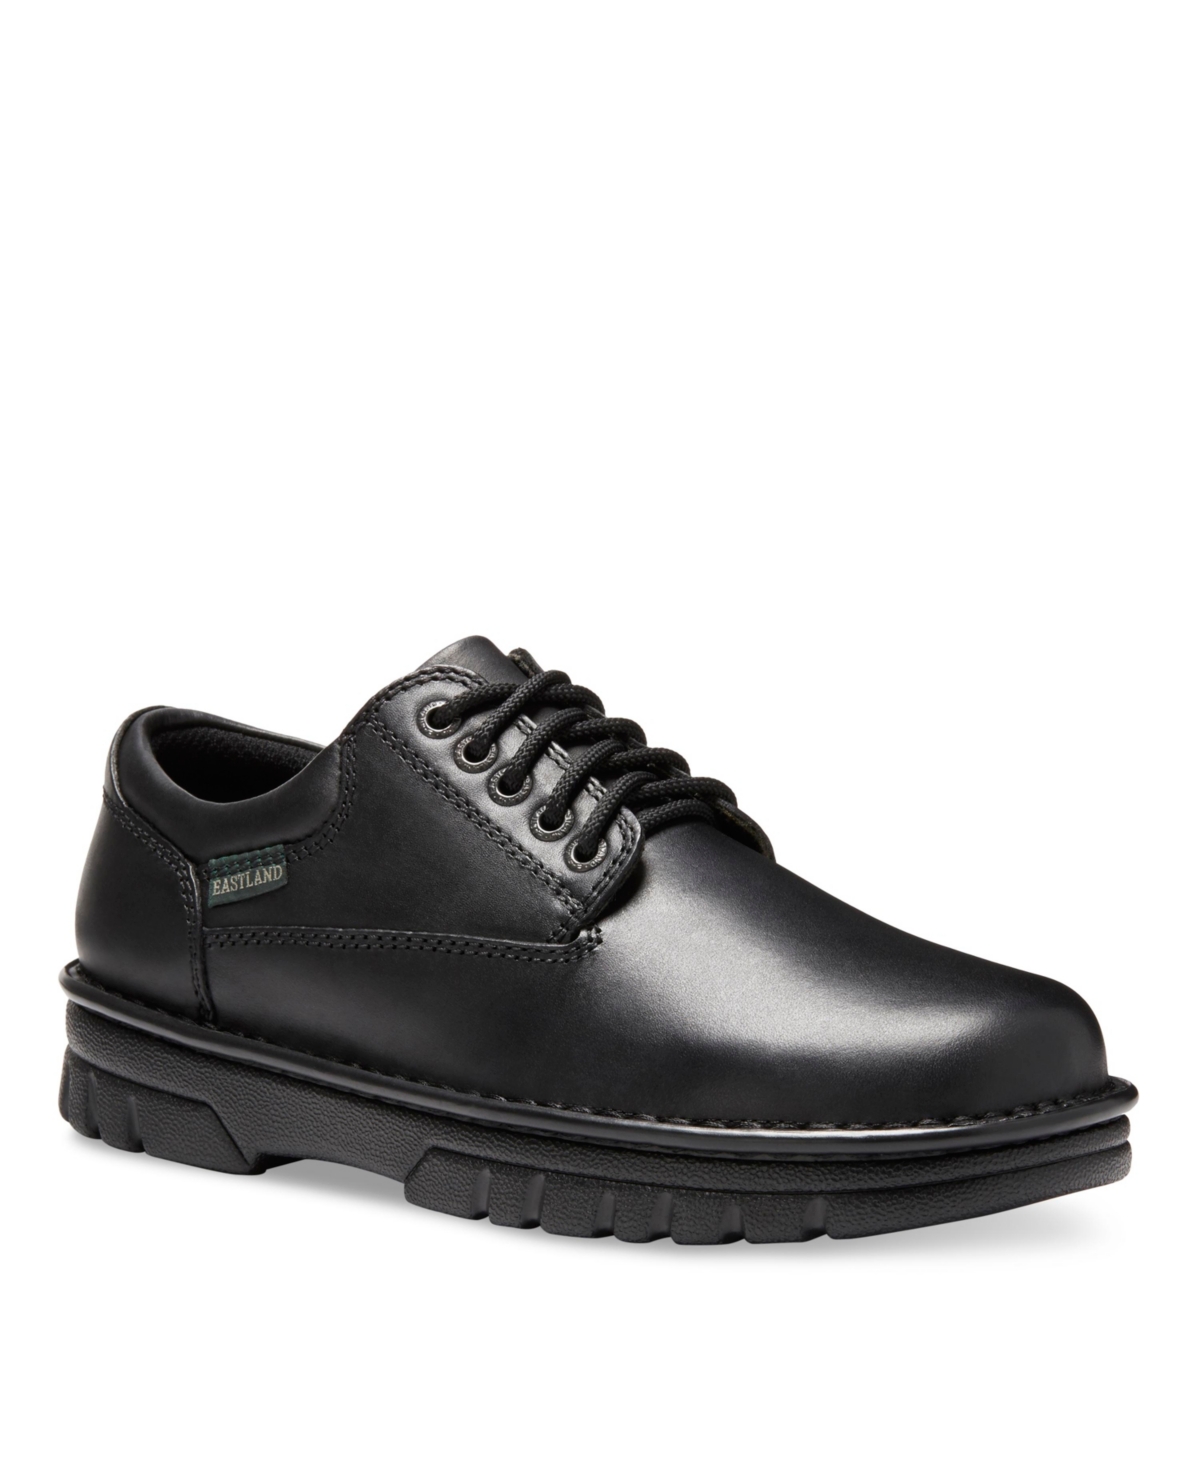 Eastland Shoe Men's Plainview Oxford Shoes Men's Shoes